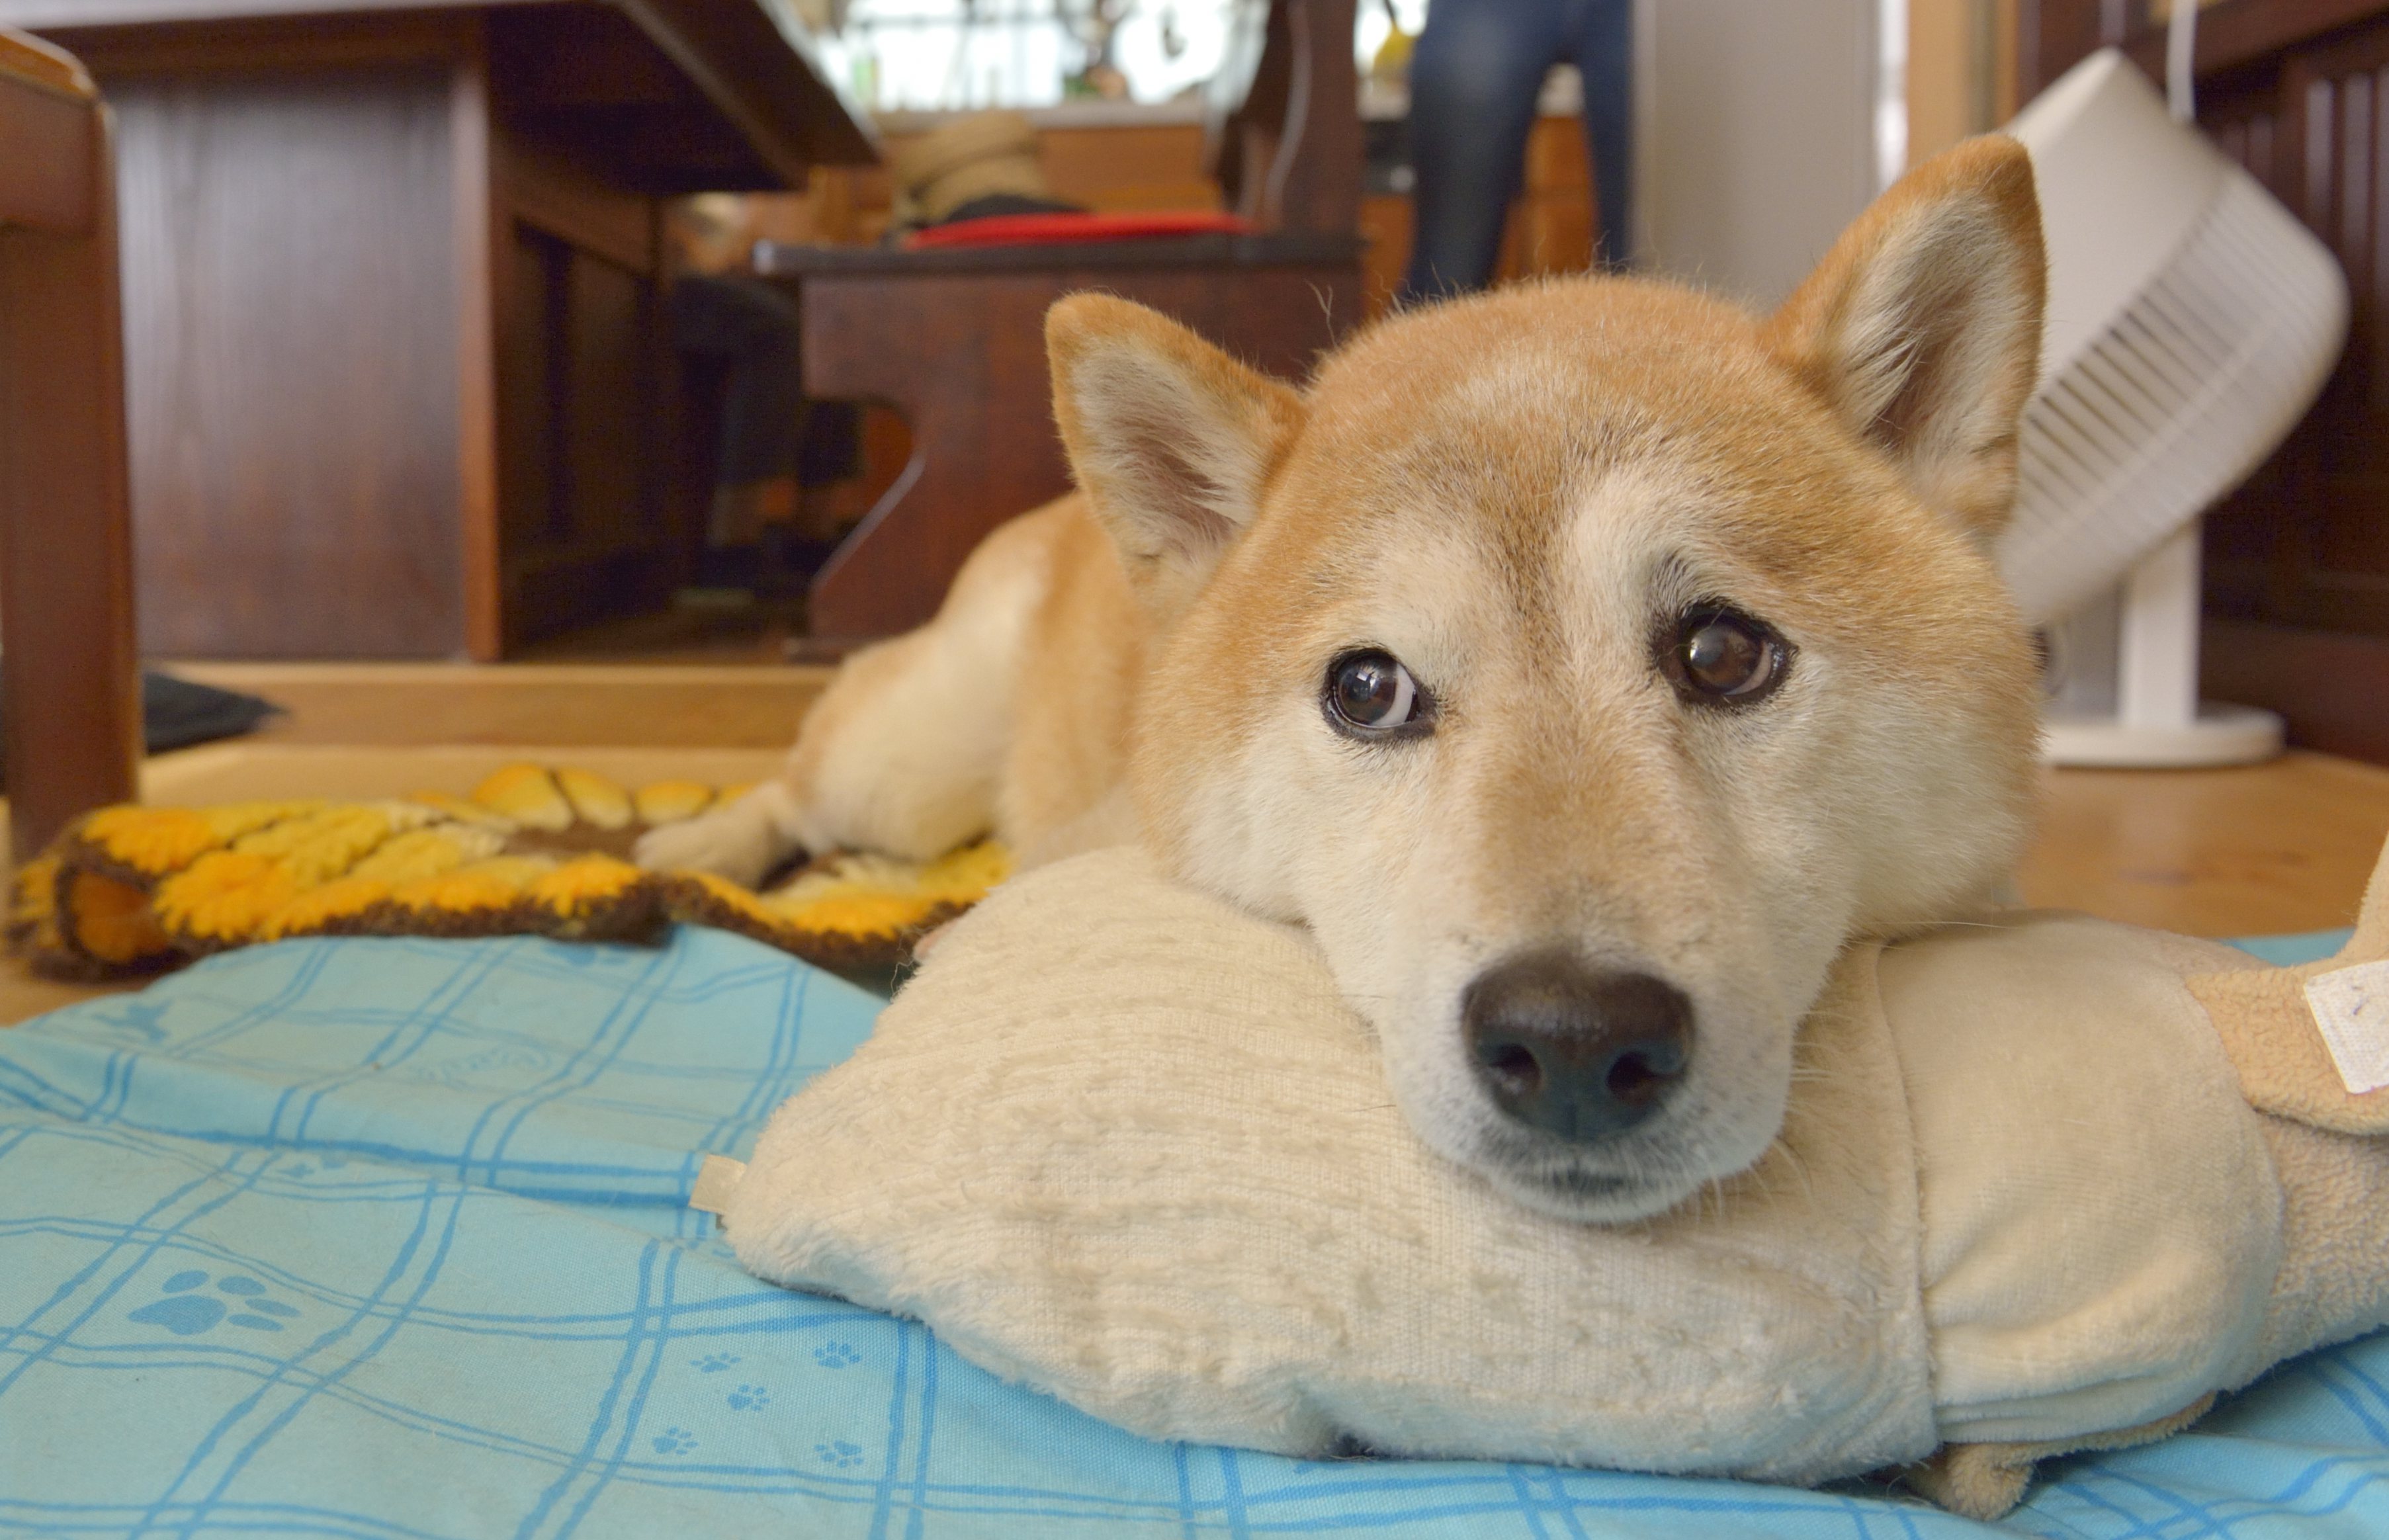 日本犬ならではのしつけ方法 してはいけない叱り方 上手に付き合う心得 Shi Ba シーバ プラス犬びより 犬と楽しく暮らす 情報マガジン